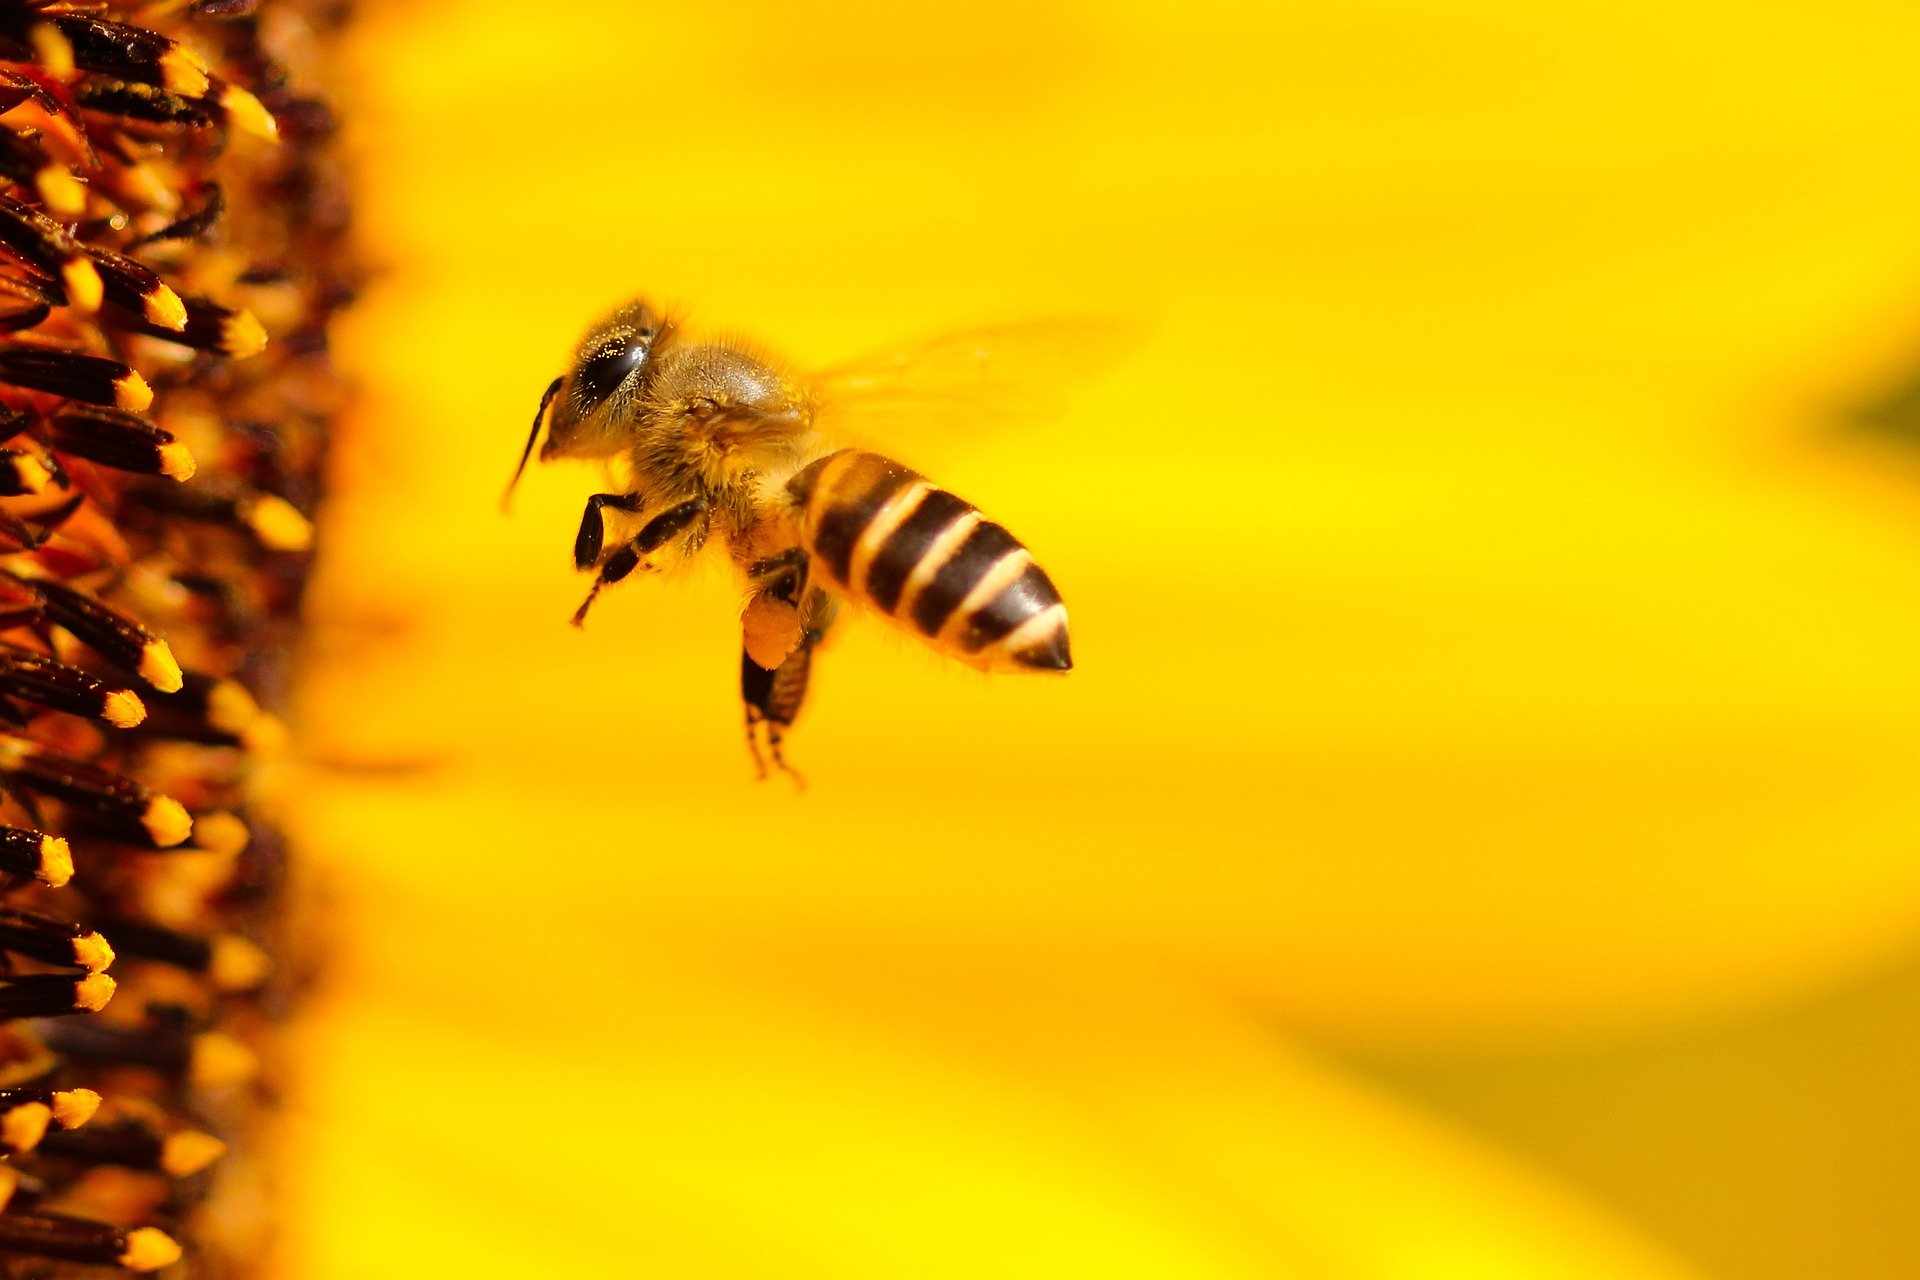 Διατροφική απειλή η εξαφάνιση μελισσών